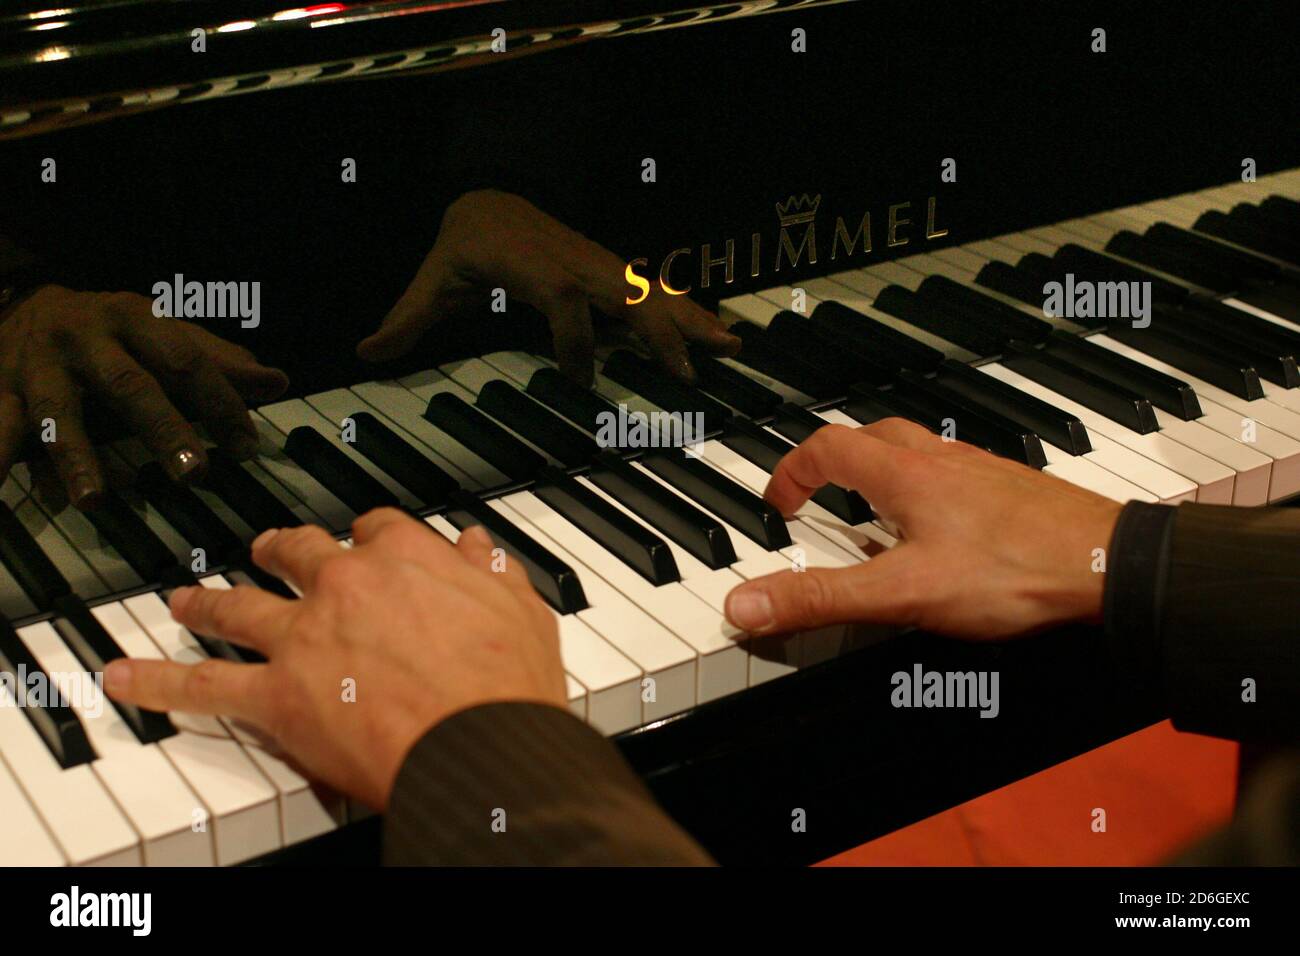 Niedersachsen , Braunschweig. Schimmel Pianofortefabrik. Haende spielen auf  dem Fluegel,Piano,Klavier. [©(c)Ingo Wandmacher, Paul-Gerhardt-Str.1, 236  Photo Stock - Alamy